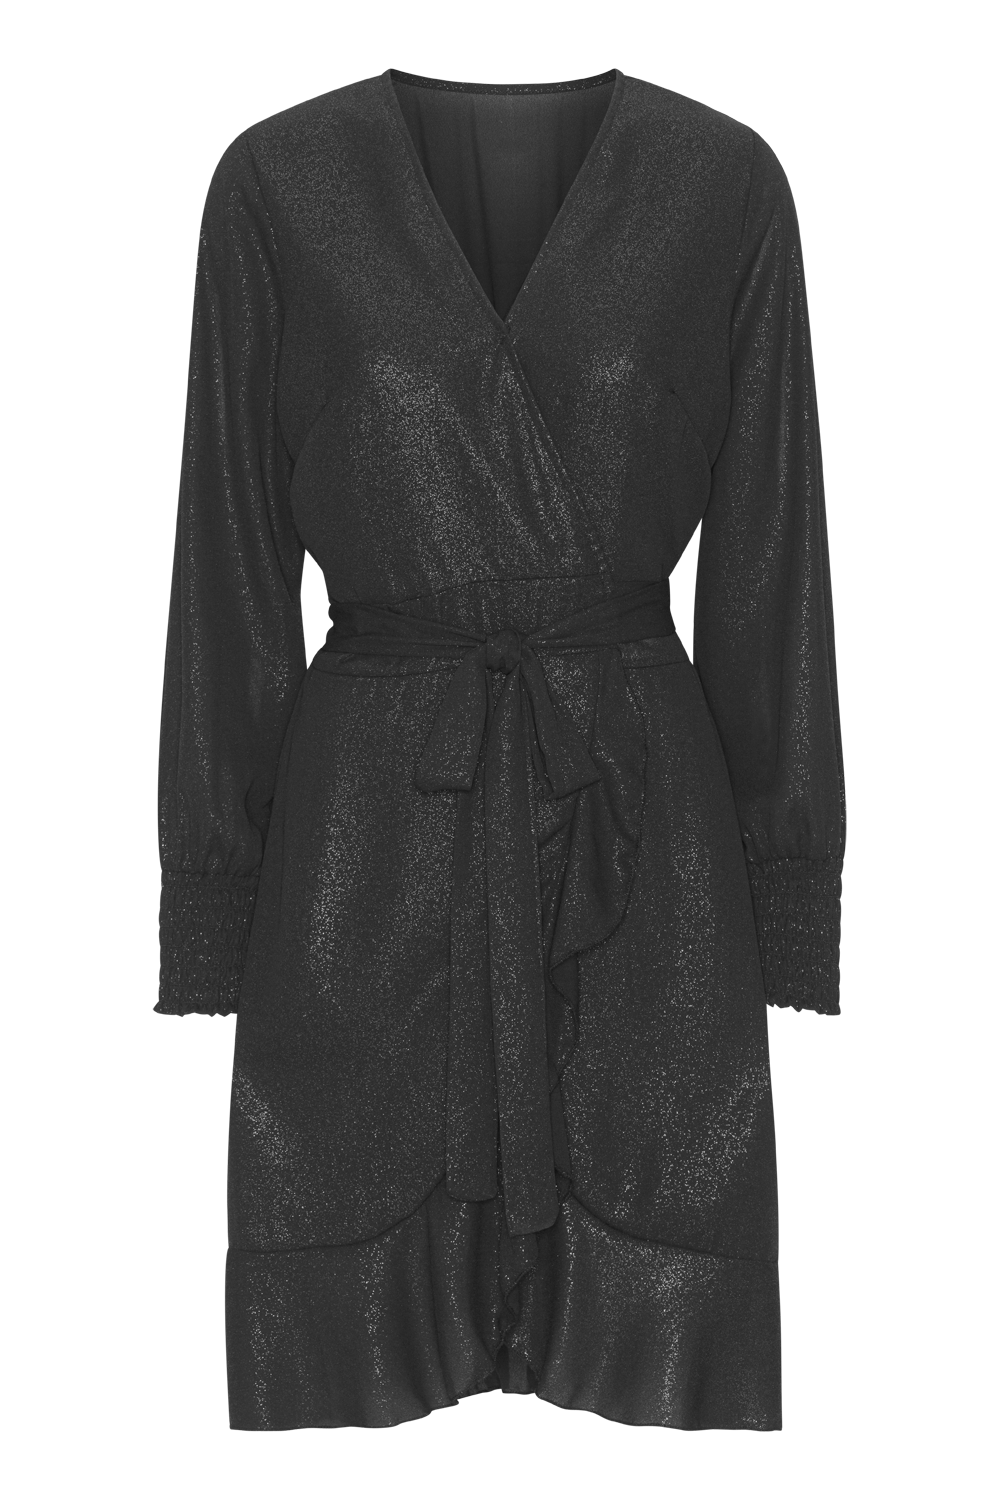 Milly LS Shimmer Wrap Dress Black - Sample